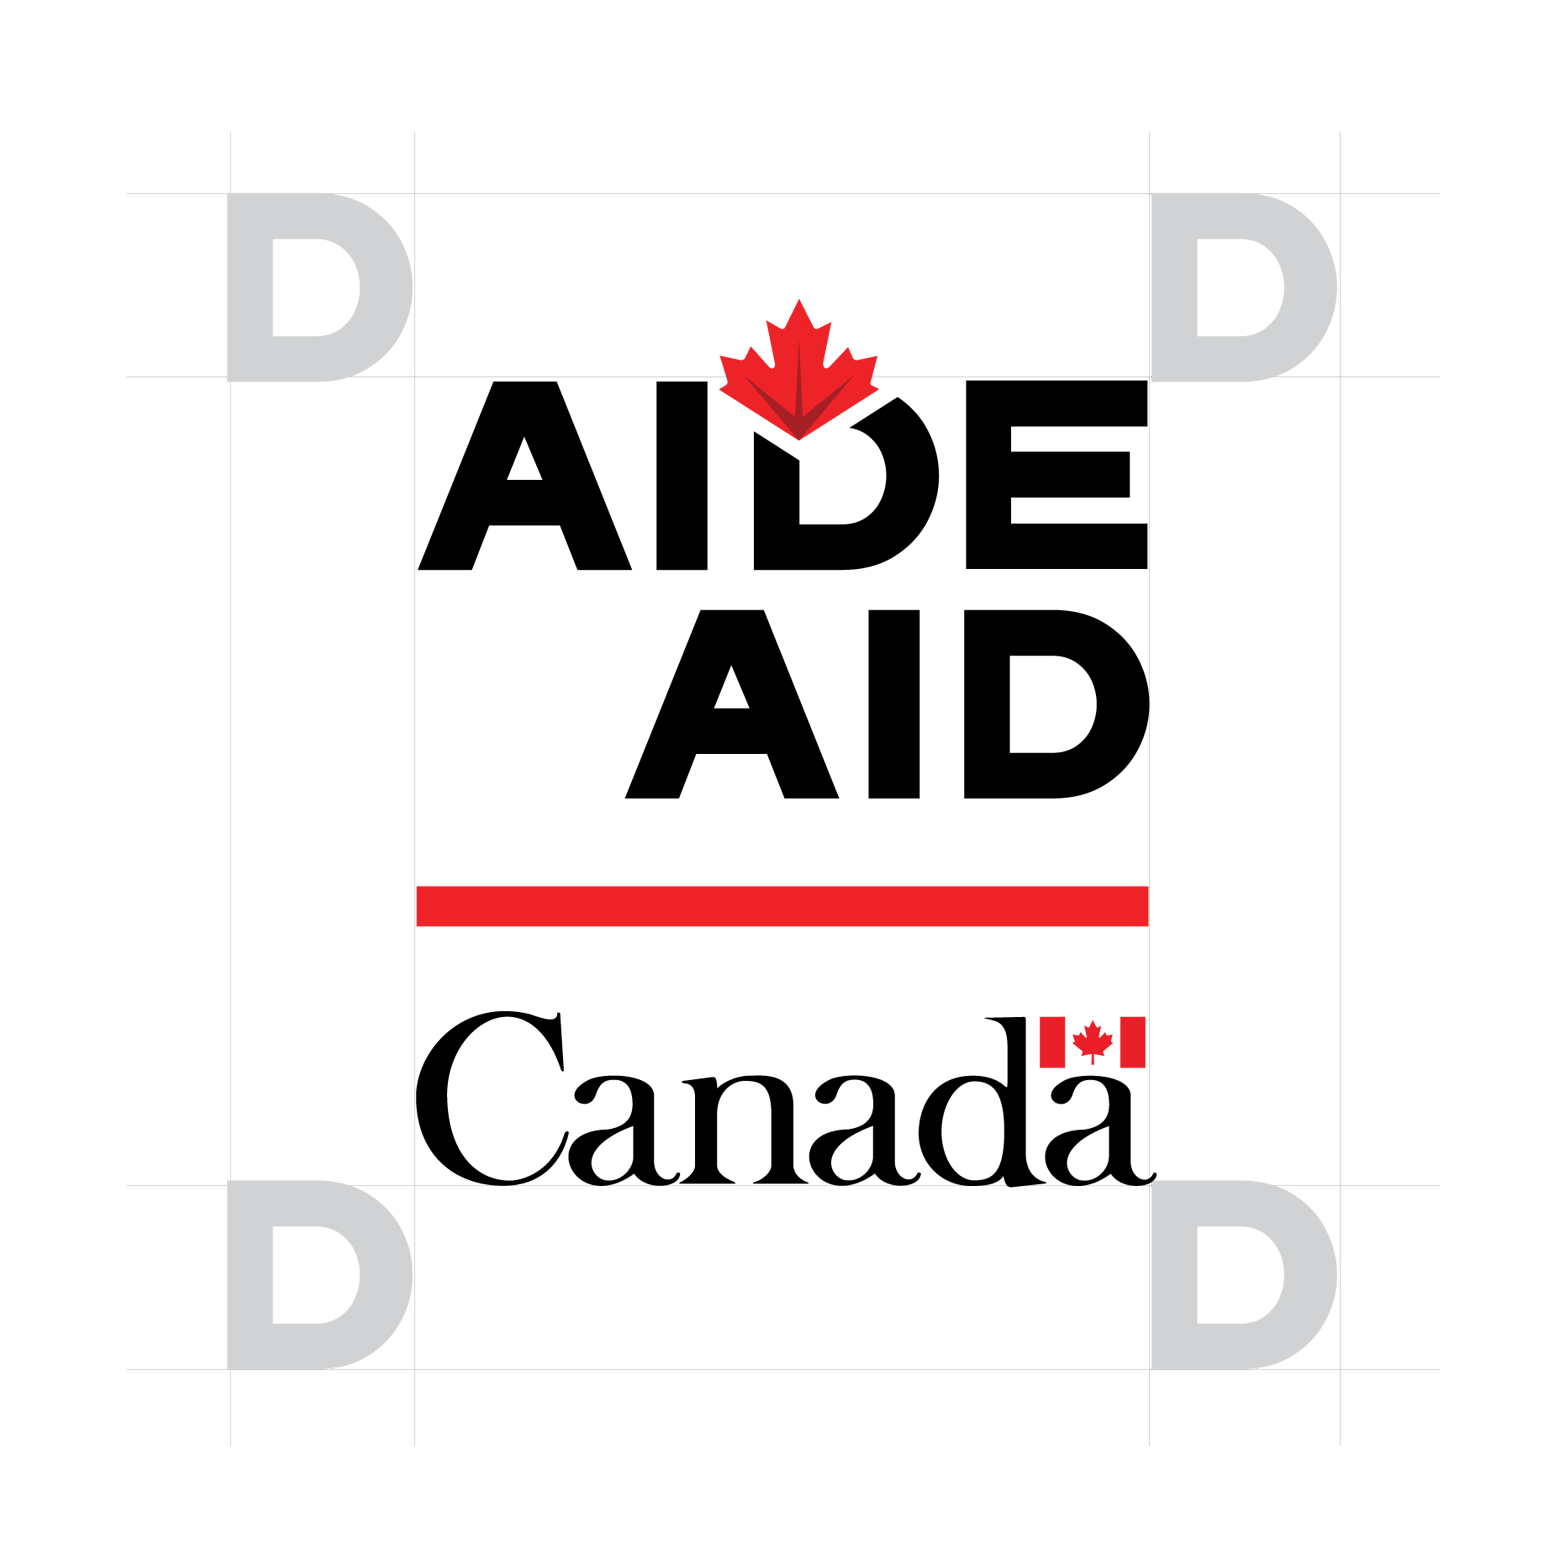 Les éléments graphiques de la signature Canada Aide sont représentés au centre du graphique : le mot « Aide » en majuscules avec une feuille d’érable apposée au haut du « D », l’équivalent anglais « Aid » en dessous, également en majuscules, une ligne horizontale rouge et le motsymbole « Canada ». Le graphique est encadré par des lignes grises, et le « D » du mot « Aide » est reproduit de chaque côté du graphique, afin de démontrer que l’espace libre autour de ce dernier doit être équivalent à la hauteur et à la largeur de la lettre.